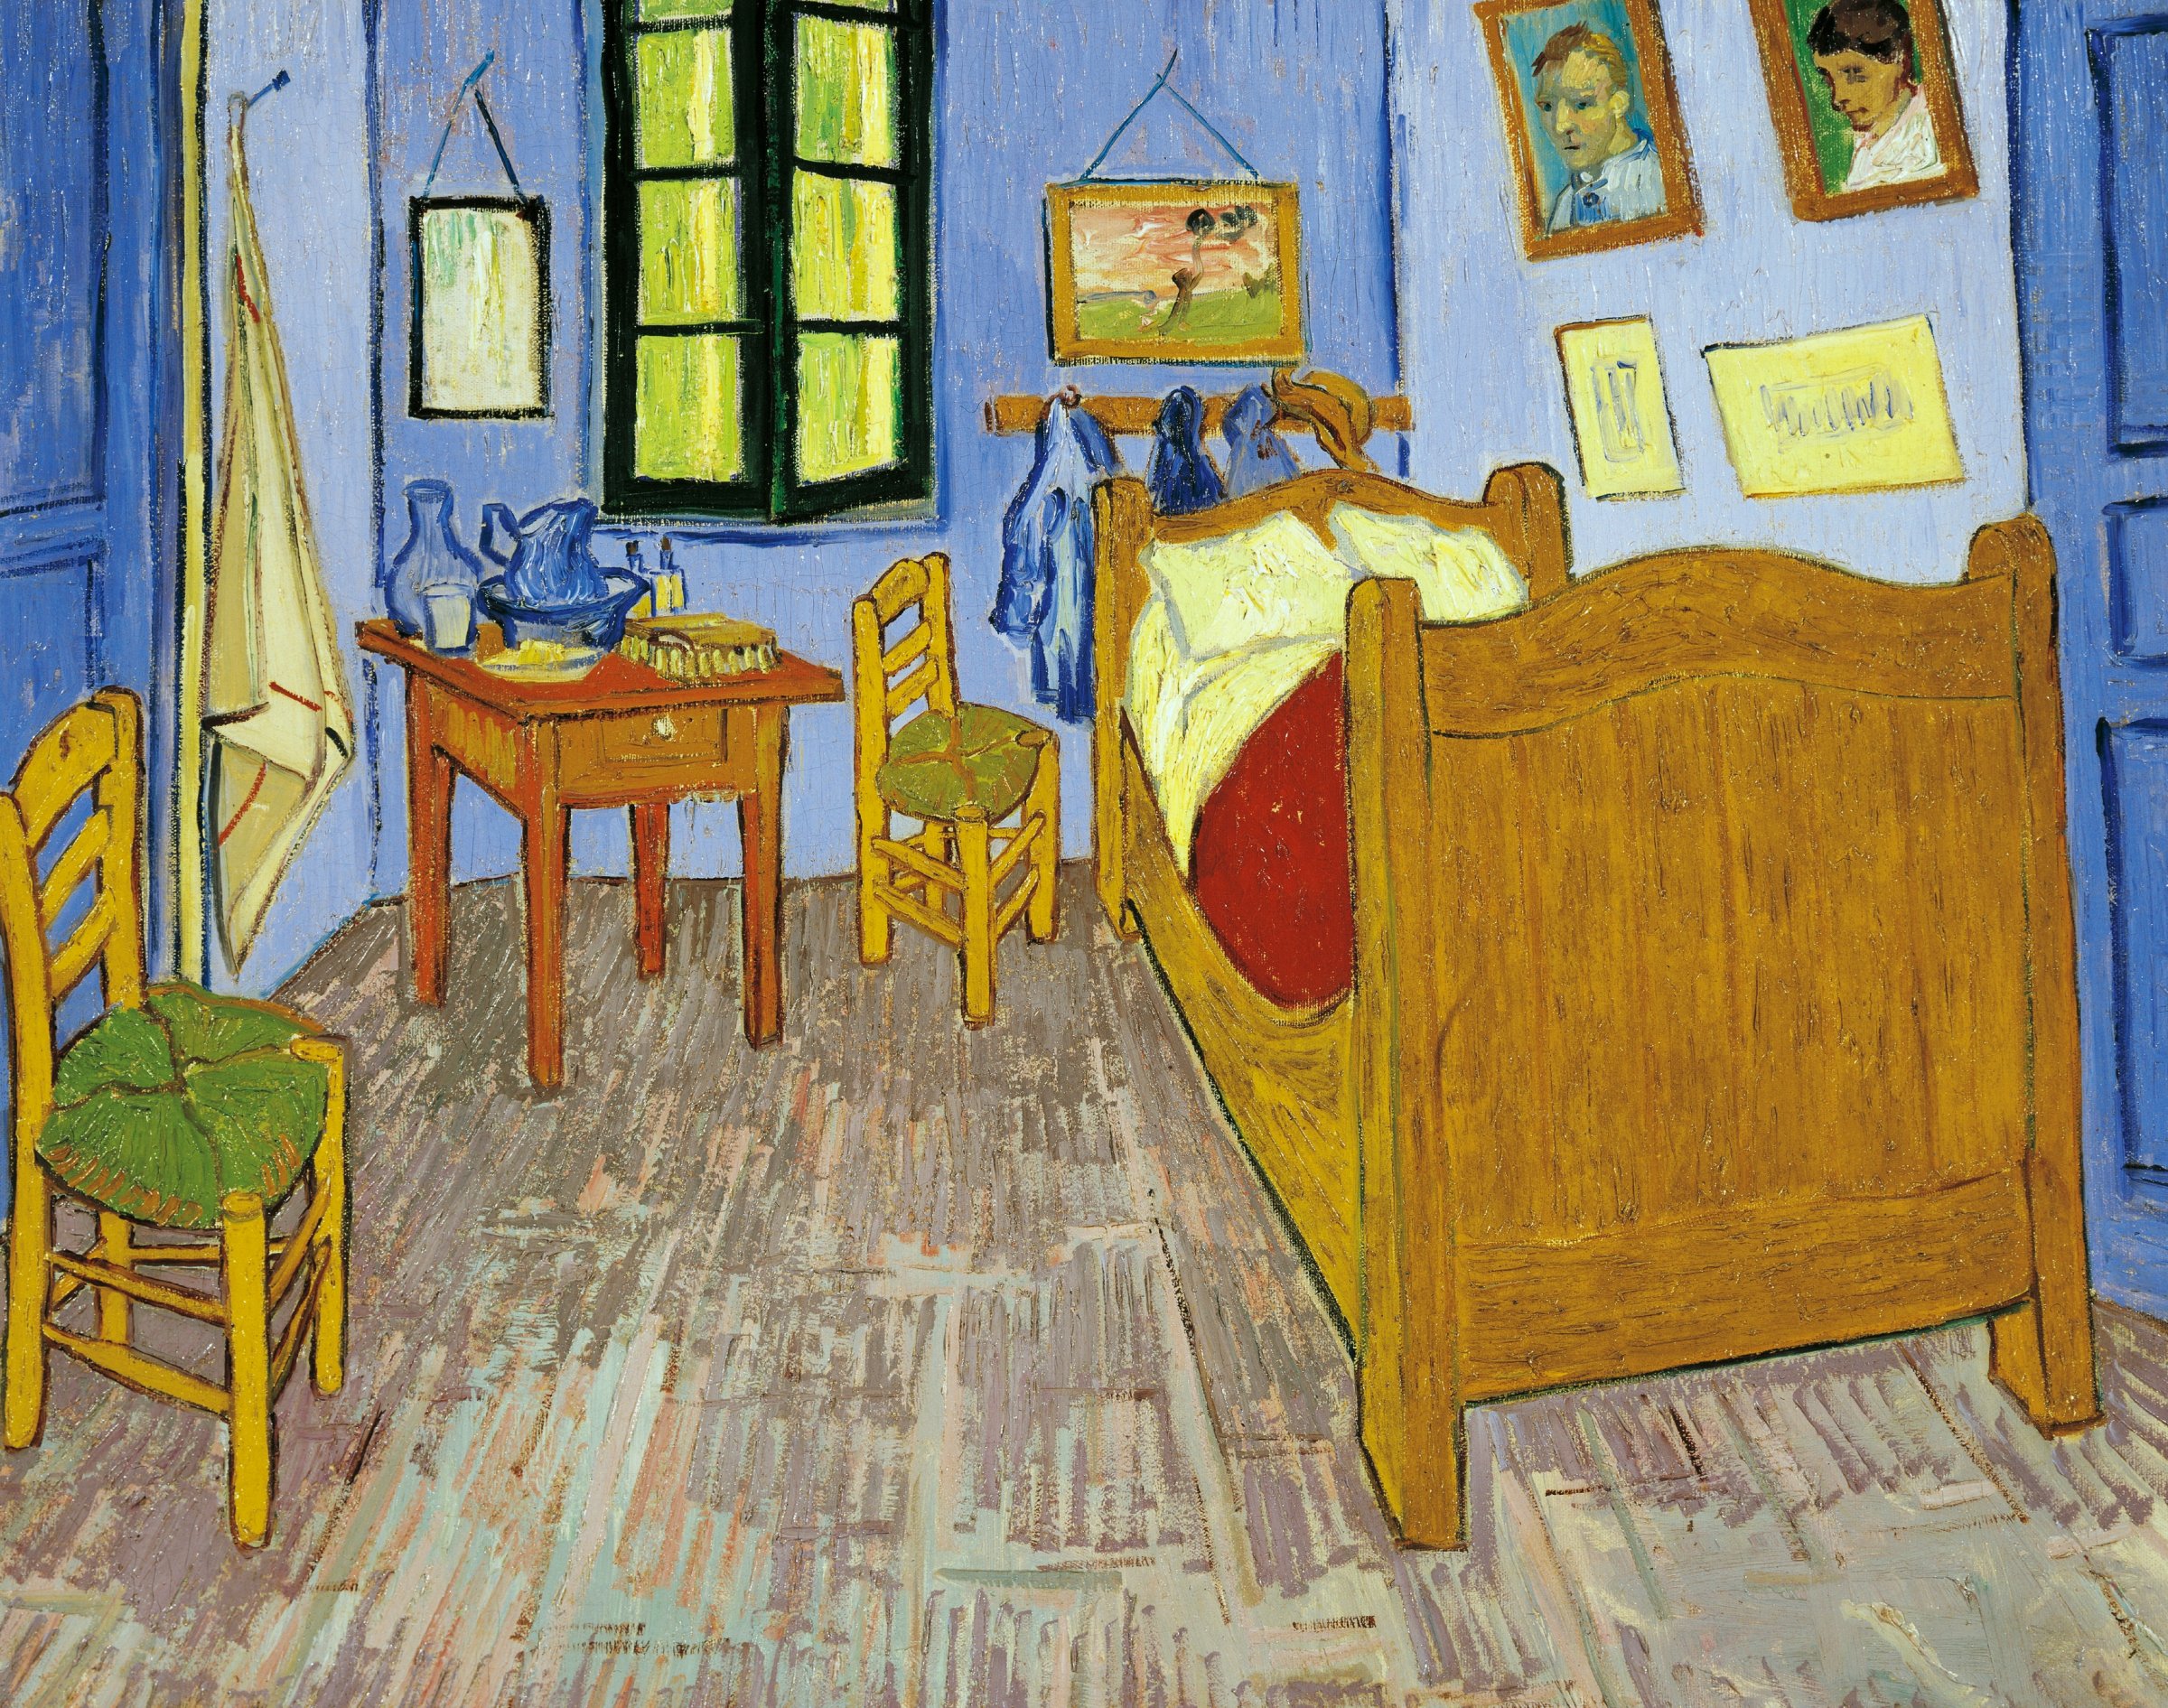 Van Gogh's bedroom in Arles, 1889, by Vincent van Gogh (1853-1890), oil on canvas, 575 x 74 cm Version preserved in Musee d'Orsay in Paris